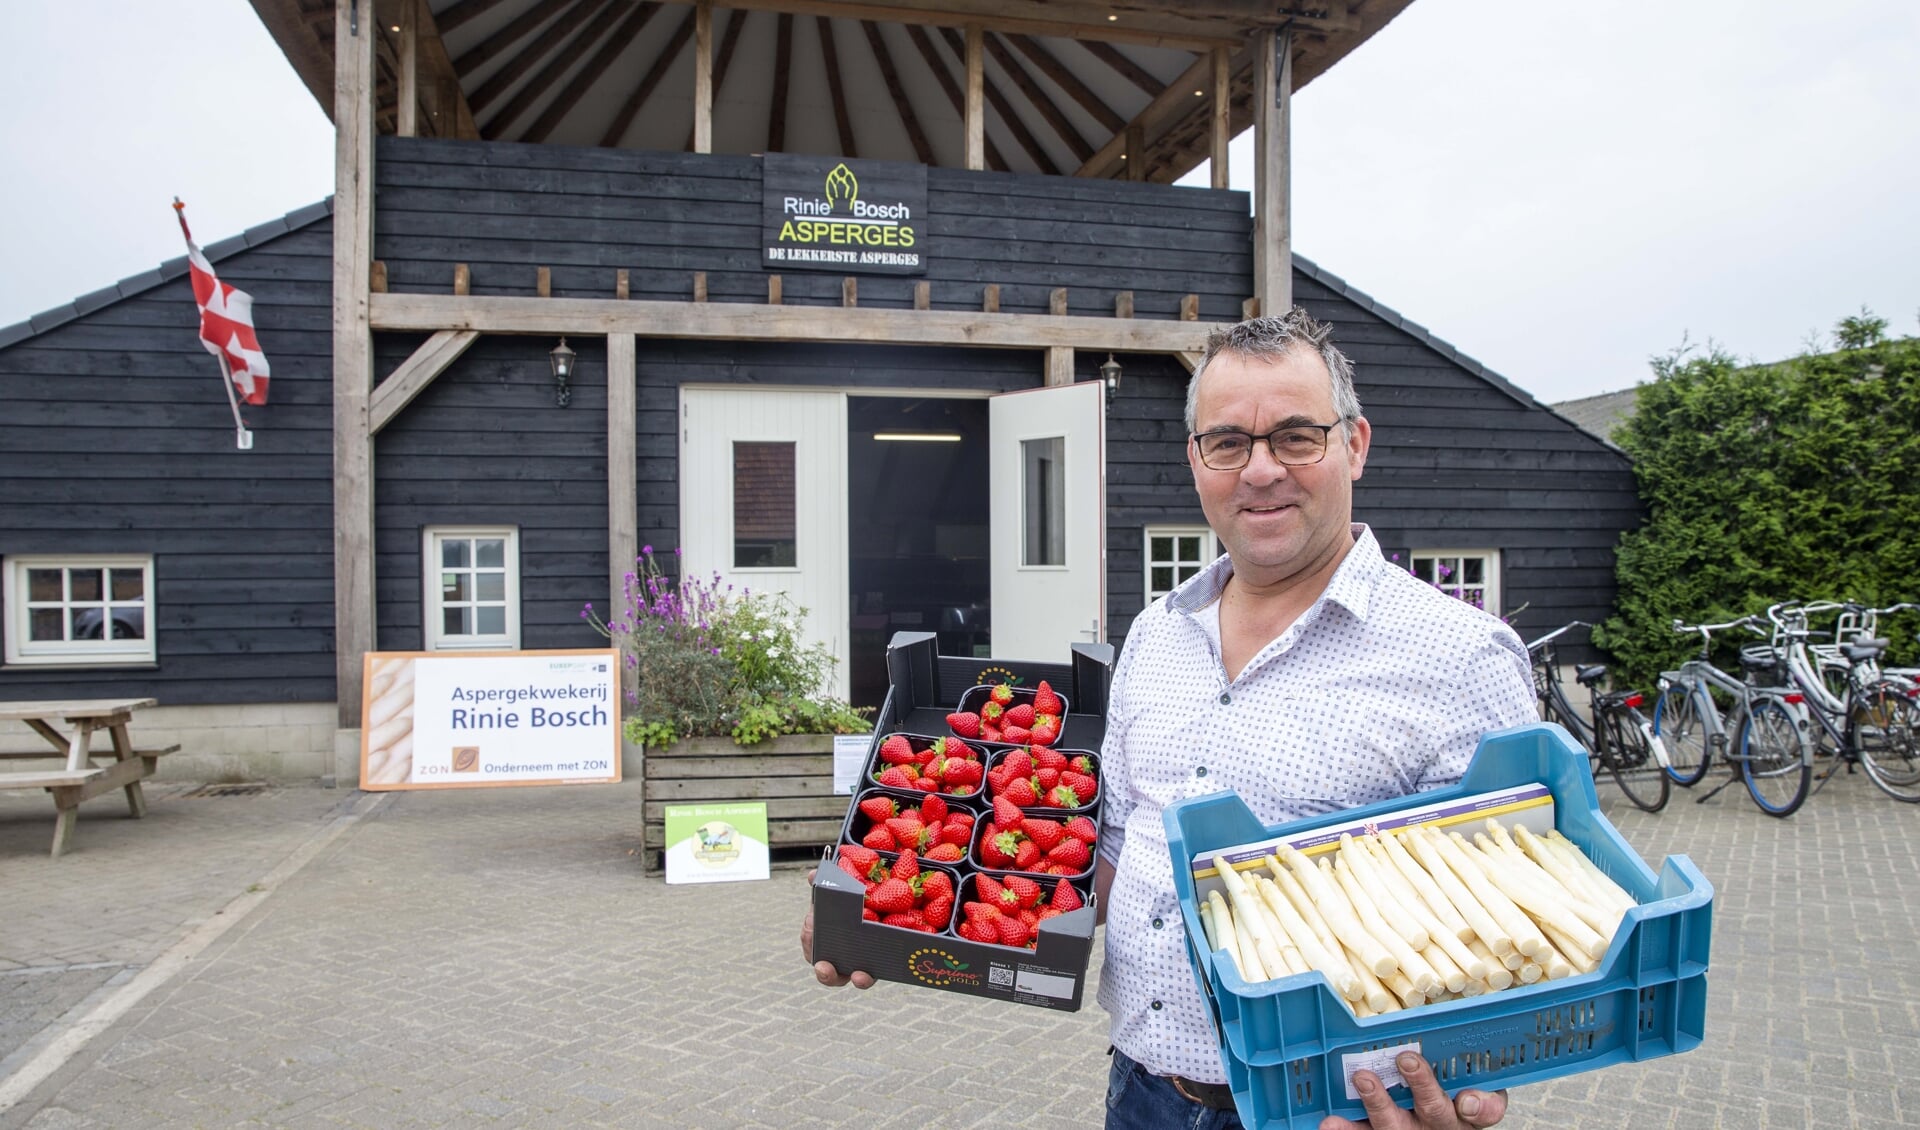 Rinie Bosch met zijn asperges en aardbeien in de hand. (foto: Ad van de Graaf)